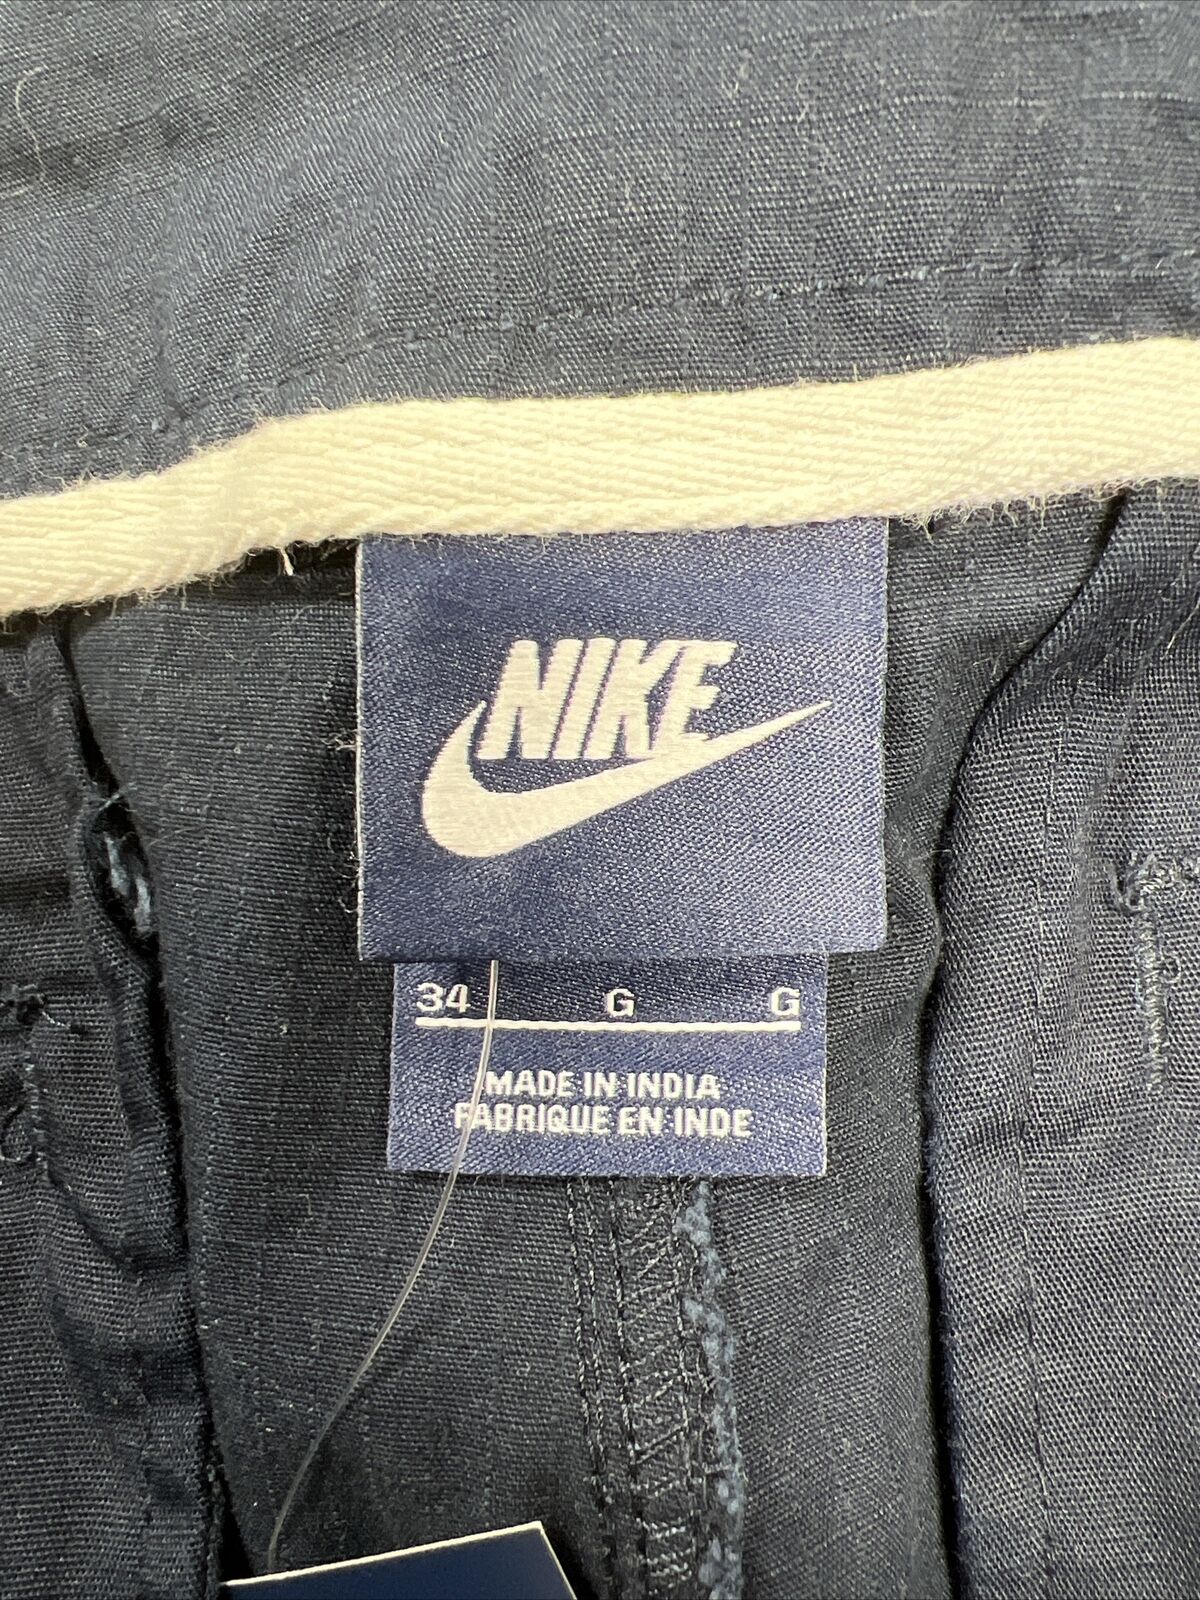 NUEVO Pantalón corto cargo de algodón Coven azul marino Nike para hombre - 34